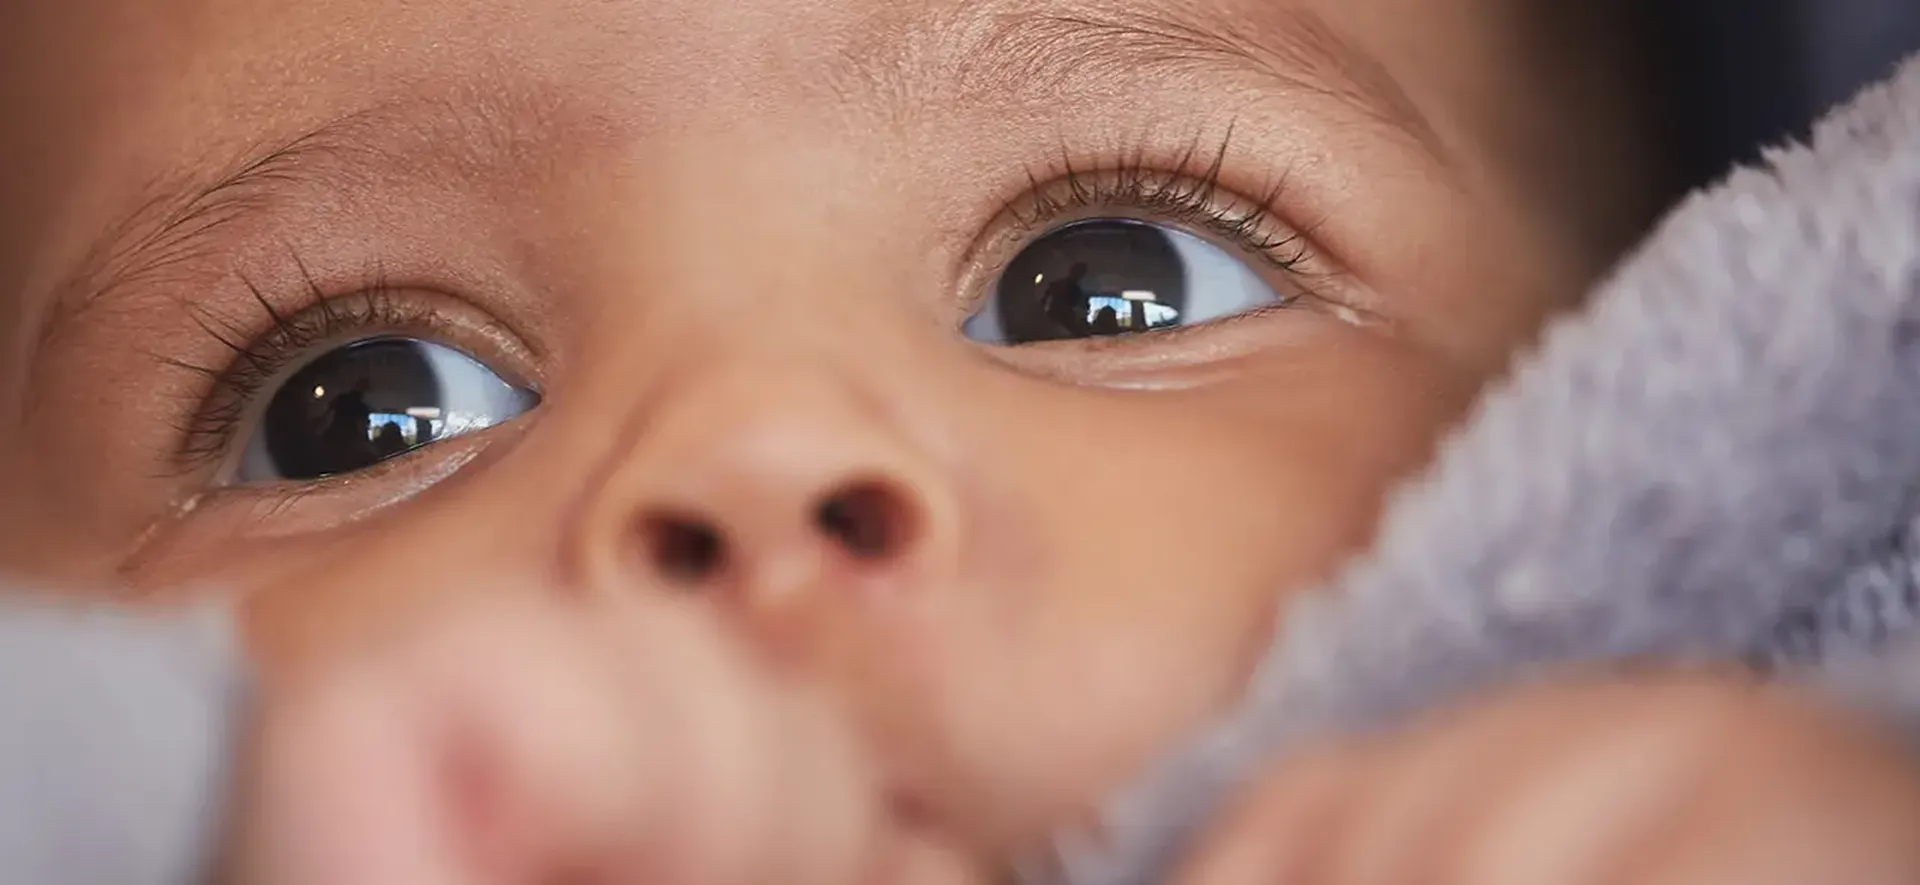 Diagnóstico precoce do retinoblastoma previne cegueira infantil